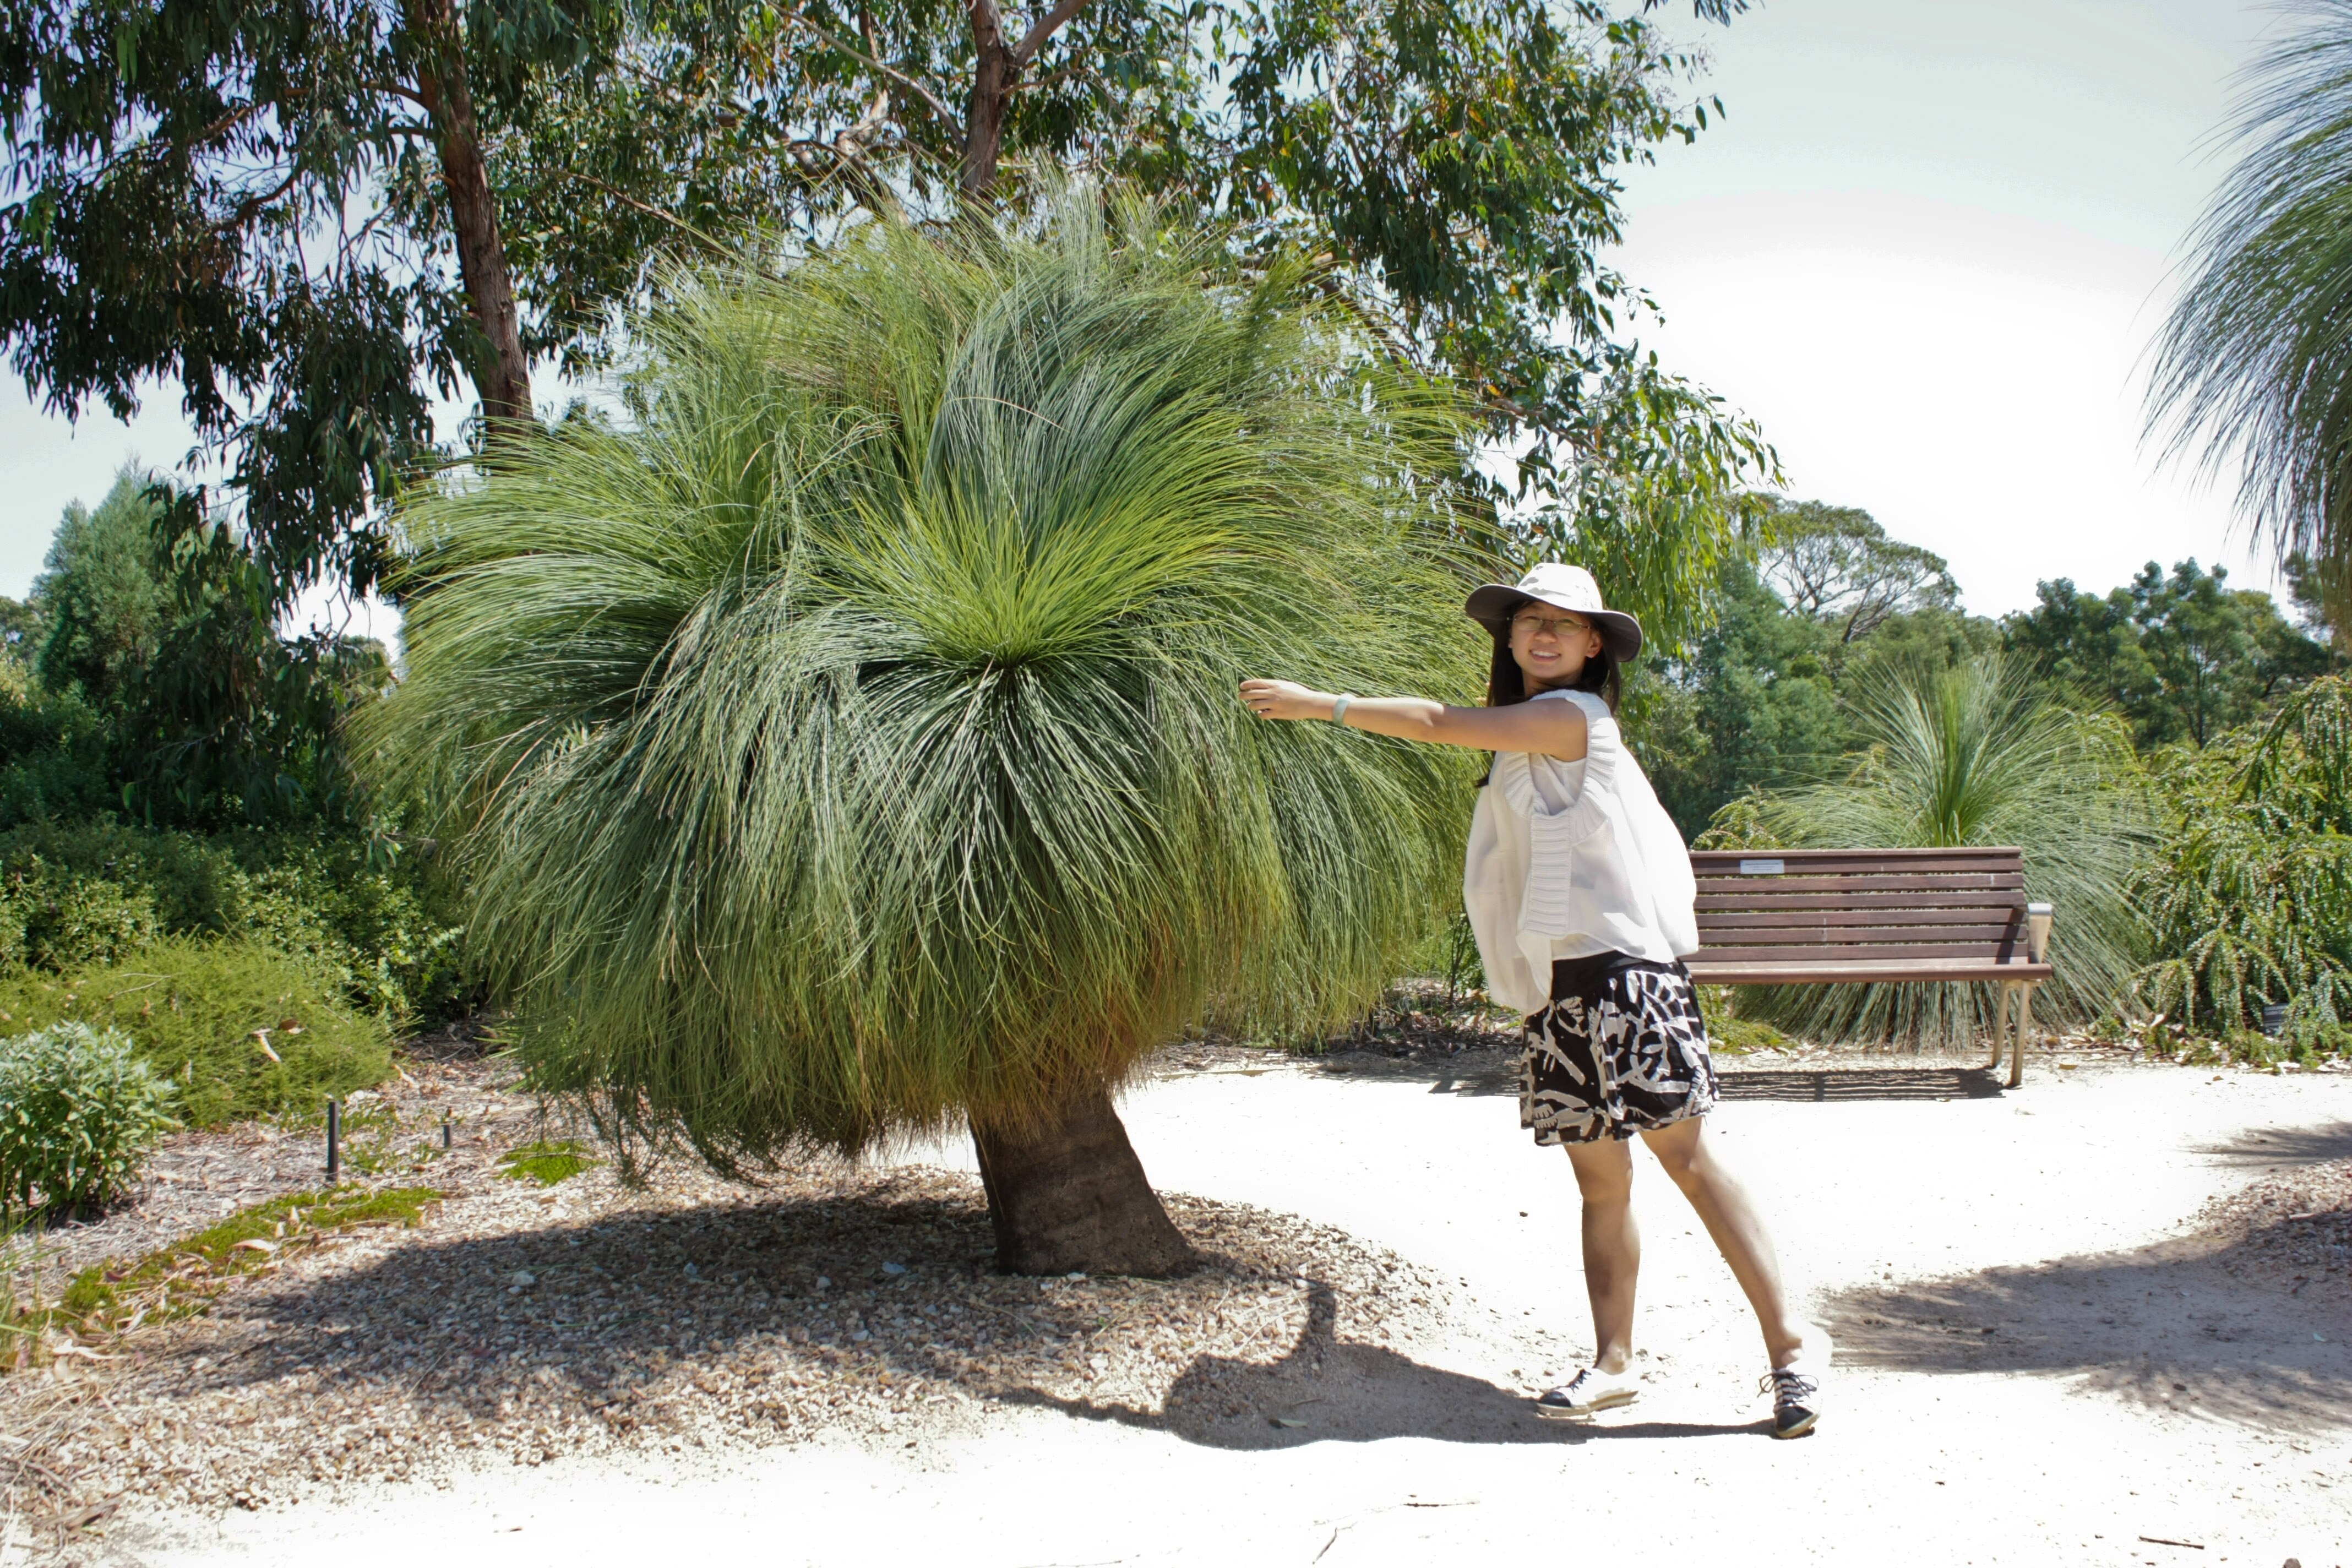 景观设计师、园艺师、墨尔本大学的园艺硕士Sally Yang